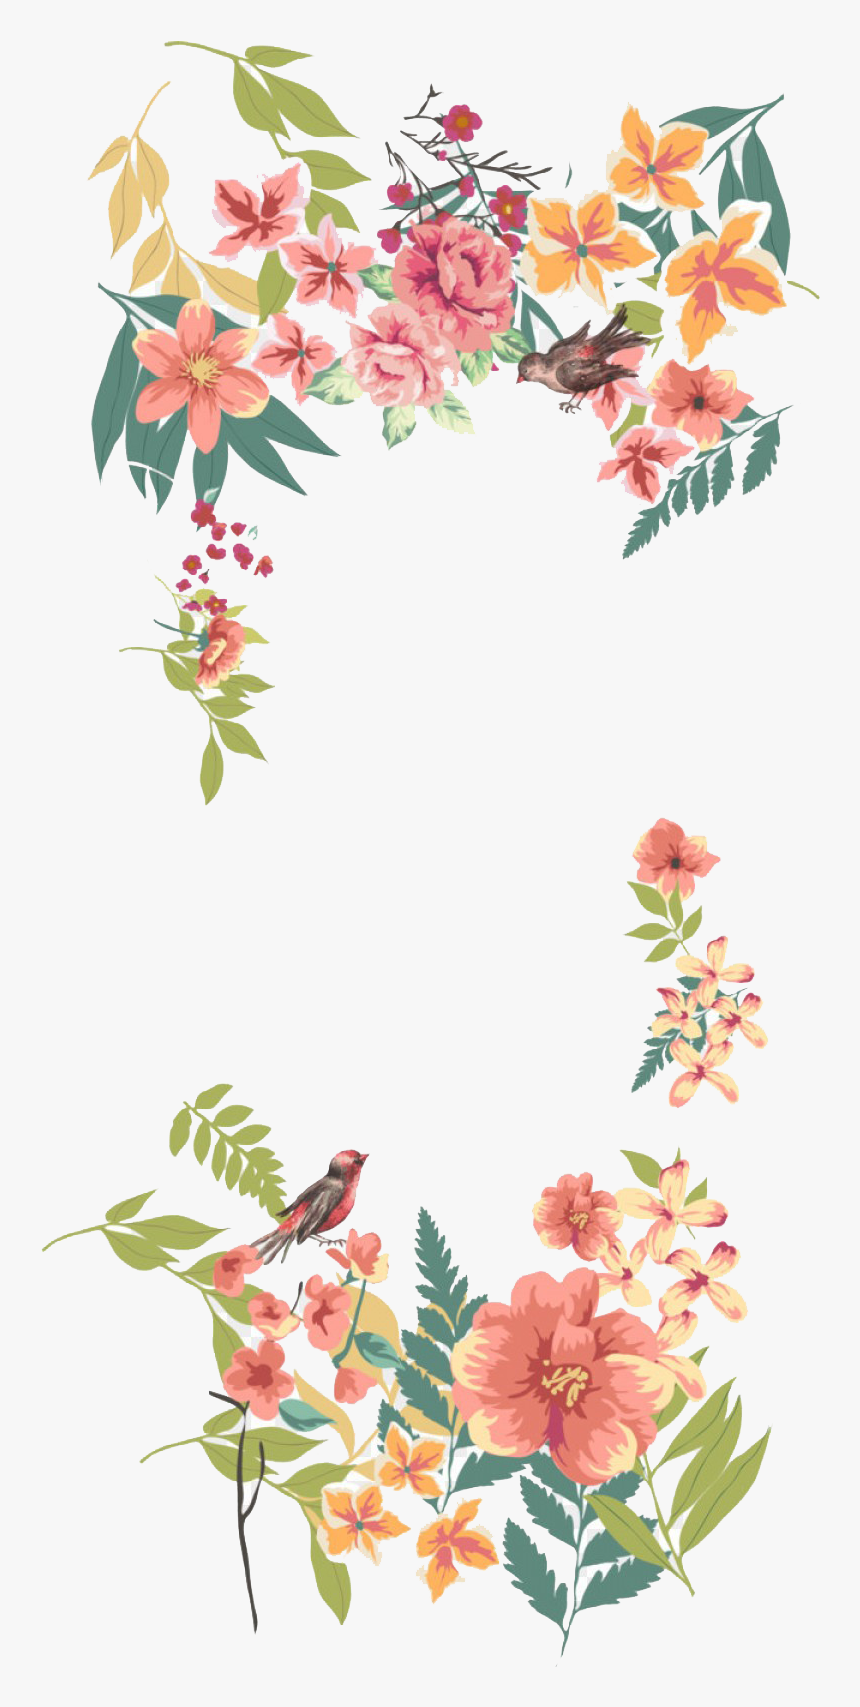 Floral Design Png Free Images - Flower Border Transparent Background, Png Download, Free Download